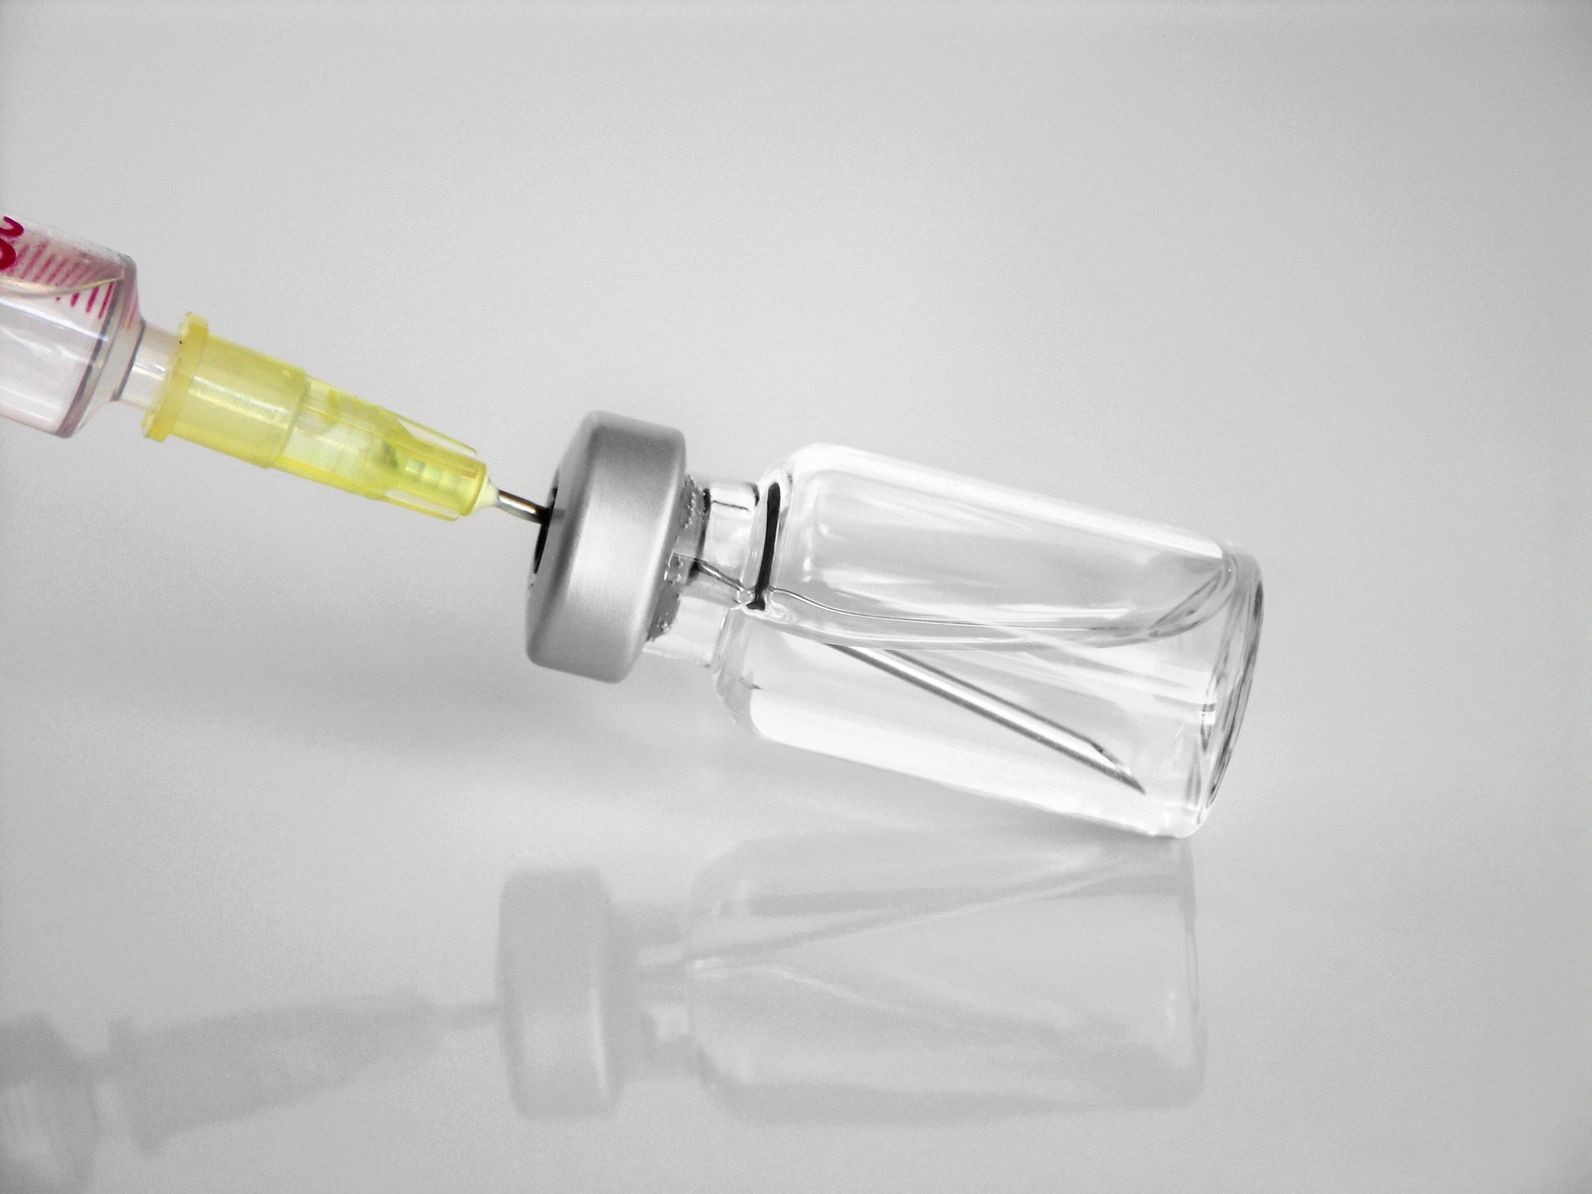 syringe in a vial